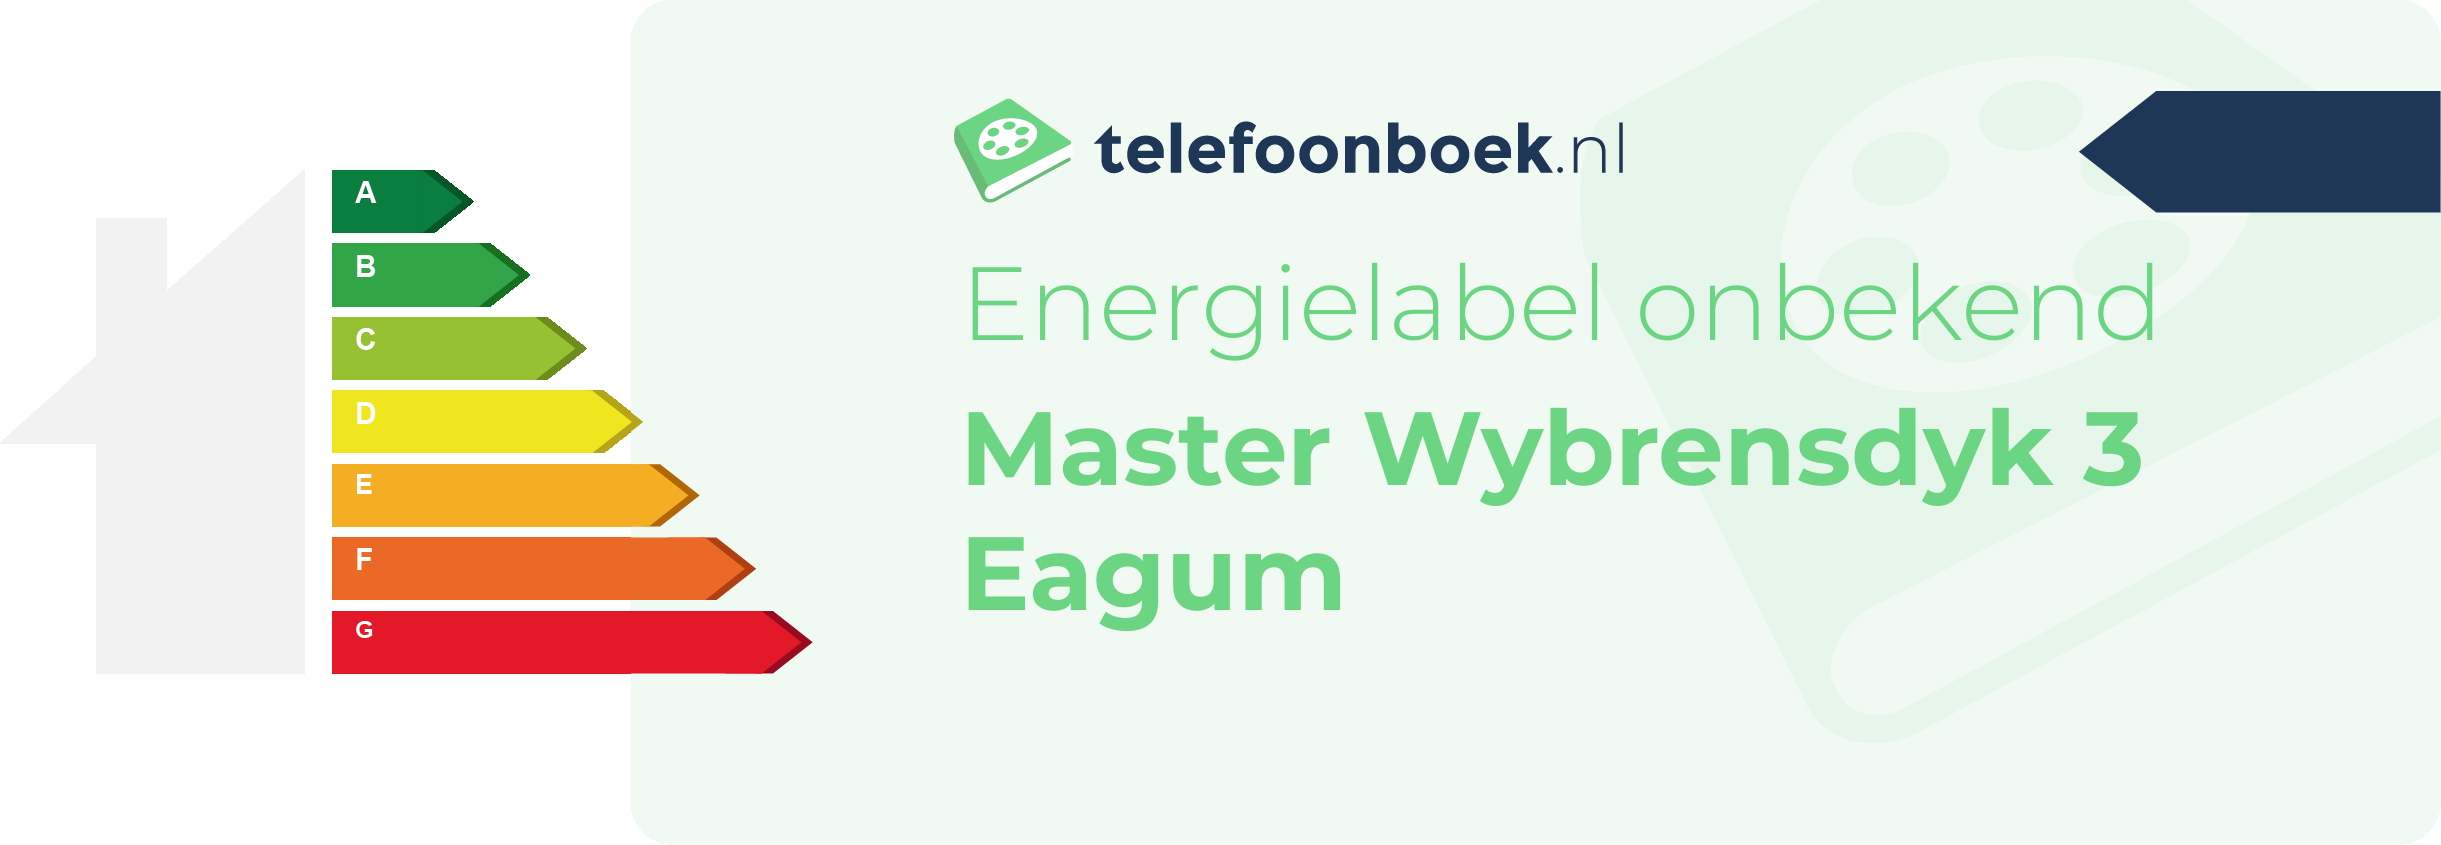 Energielabel Master Wybrensdyk 3 Eagum